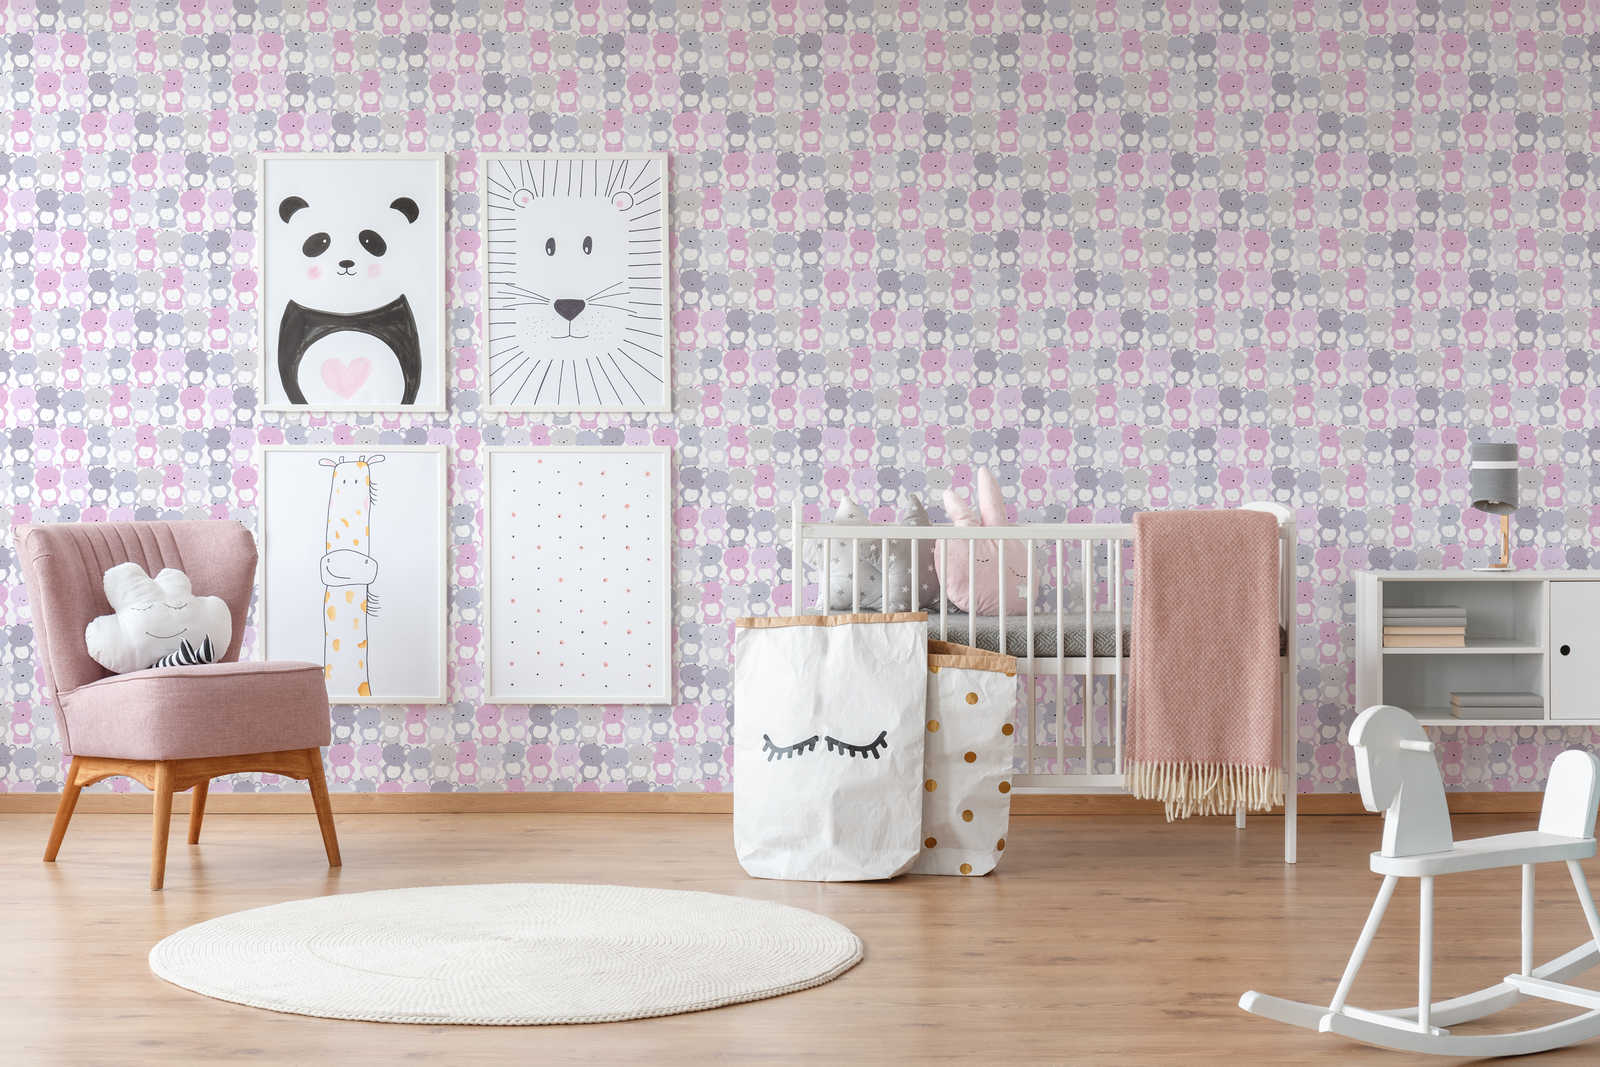             Tapete Kinderzimmer Mädchen Bären Muster – Rosa, Grau , Weiß
        